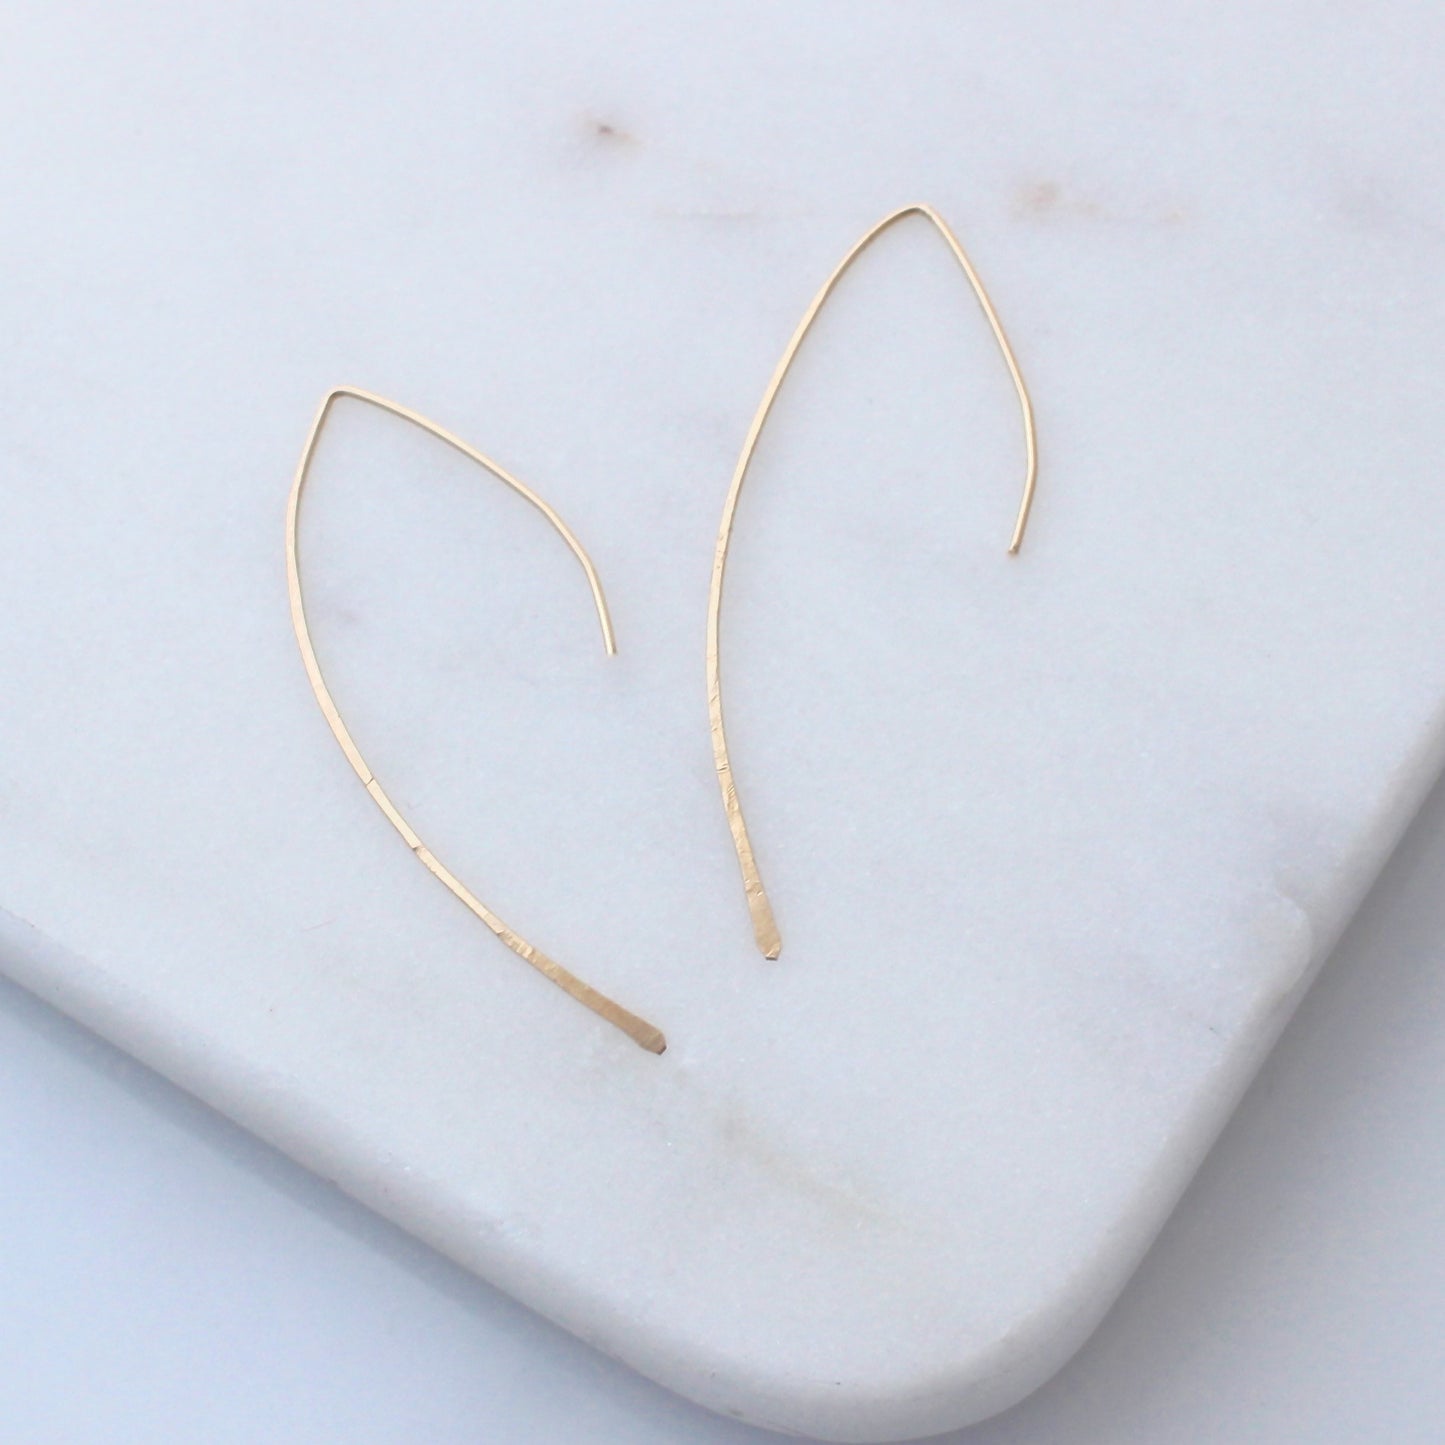 Gold Arc ear threader earrings